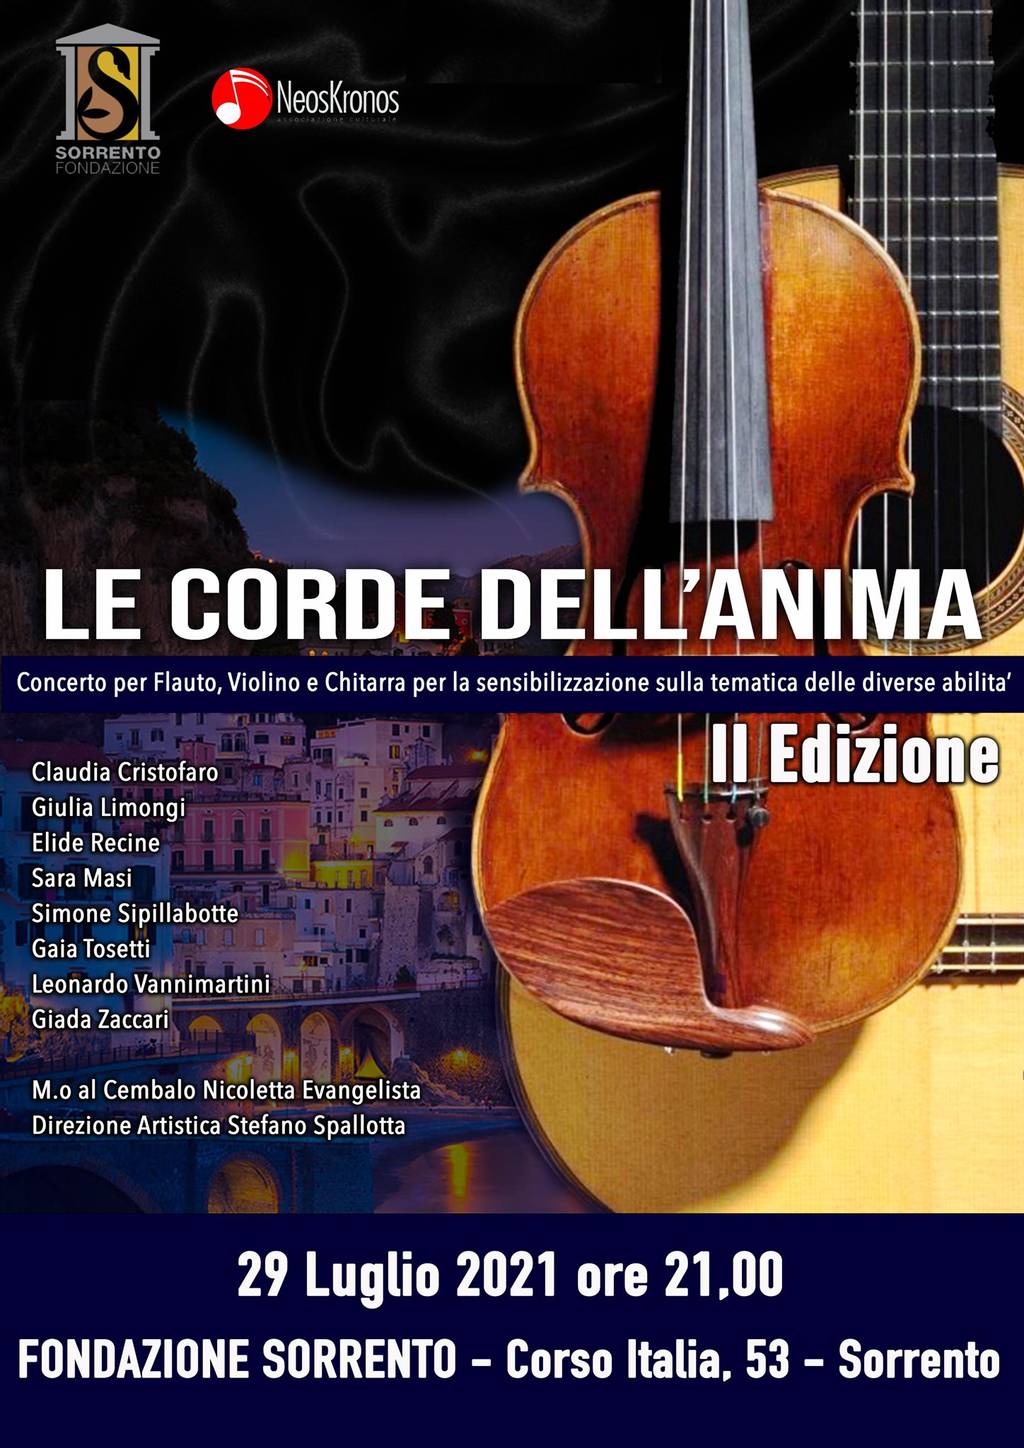 "Le corde dell’Anima" 2nd edition